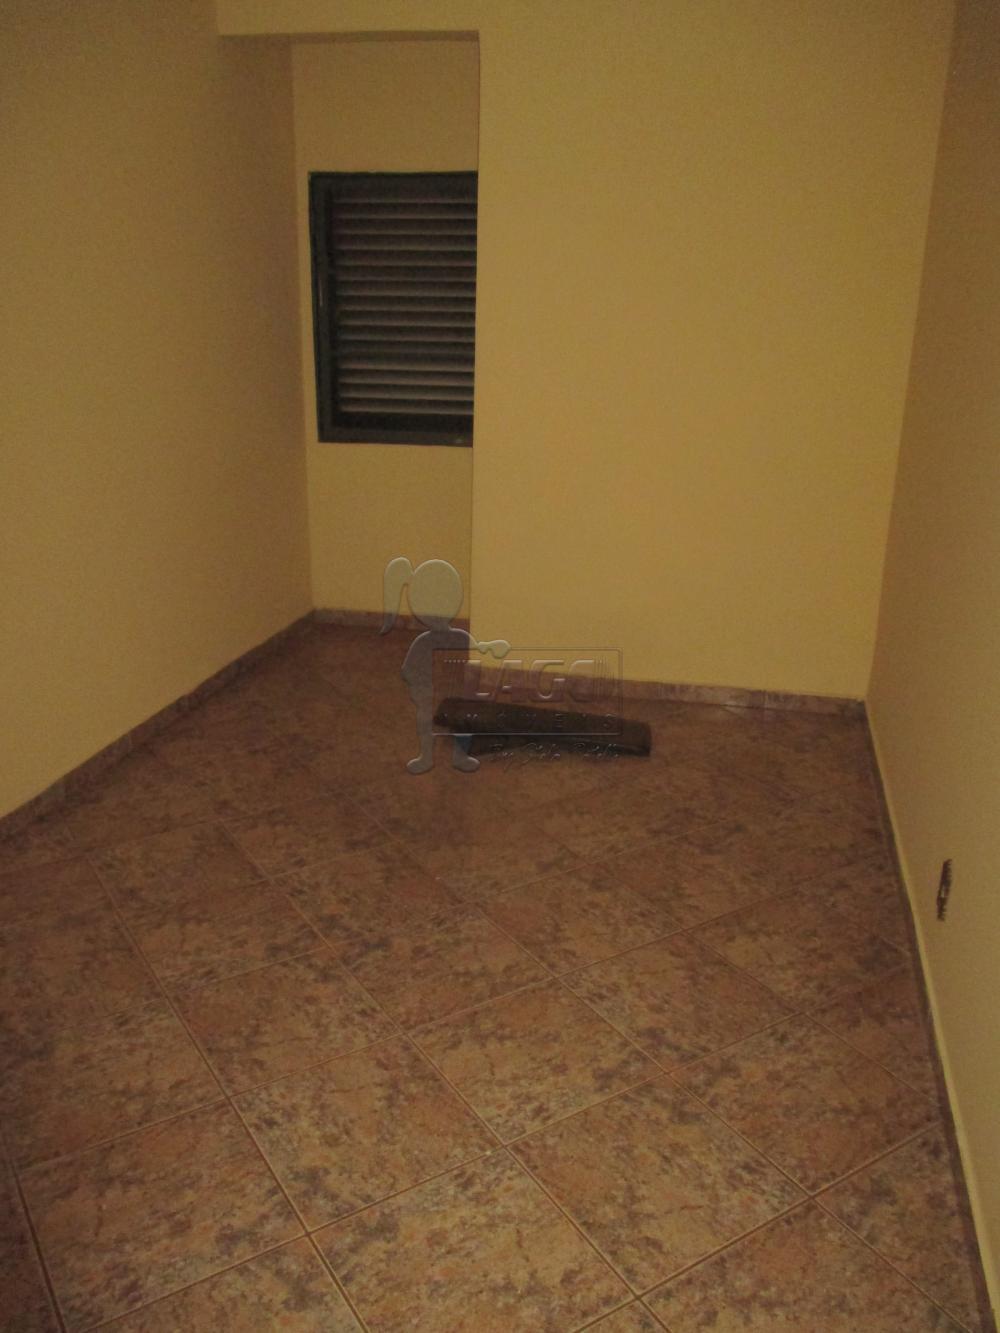 Alugar Apartamentos / Padrão em Ribeirão Preto R$ 1.950,00 - Foto 13